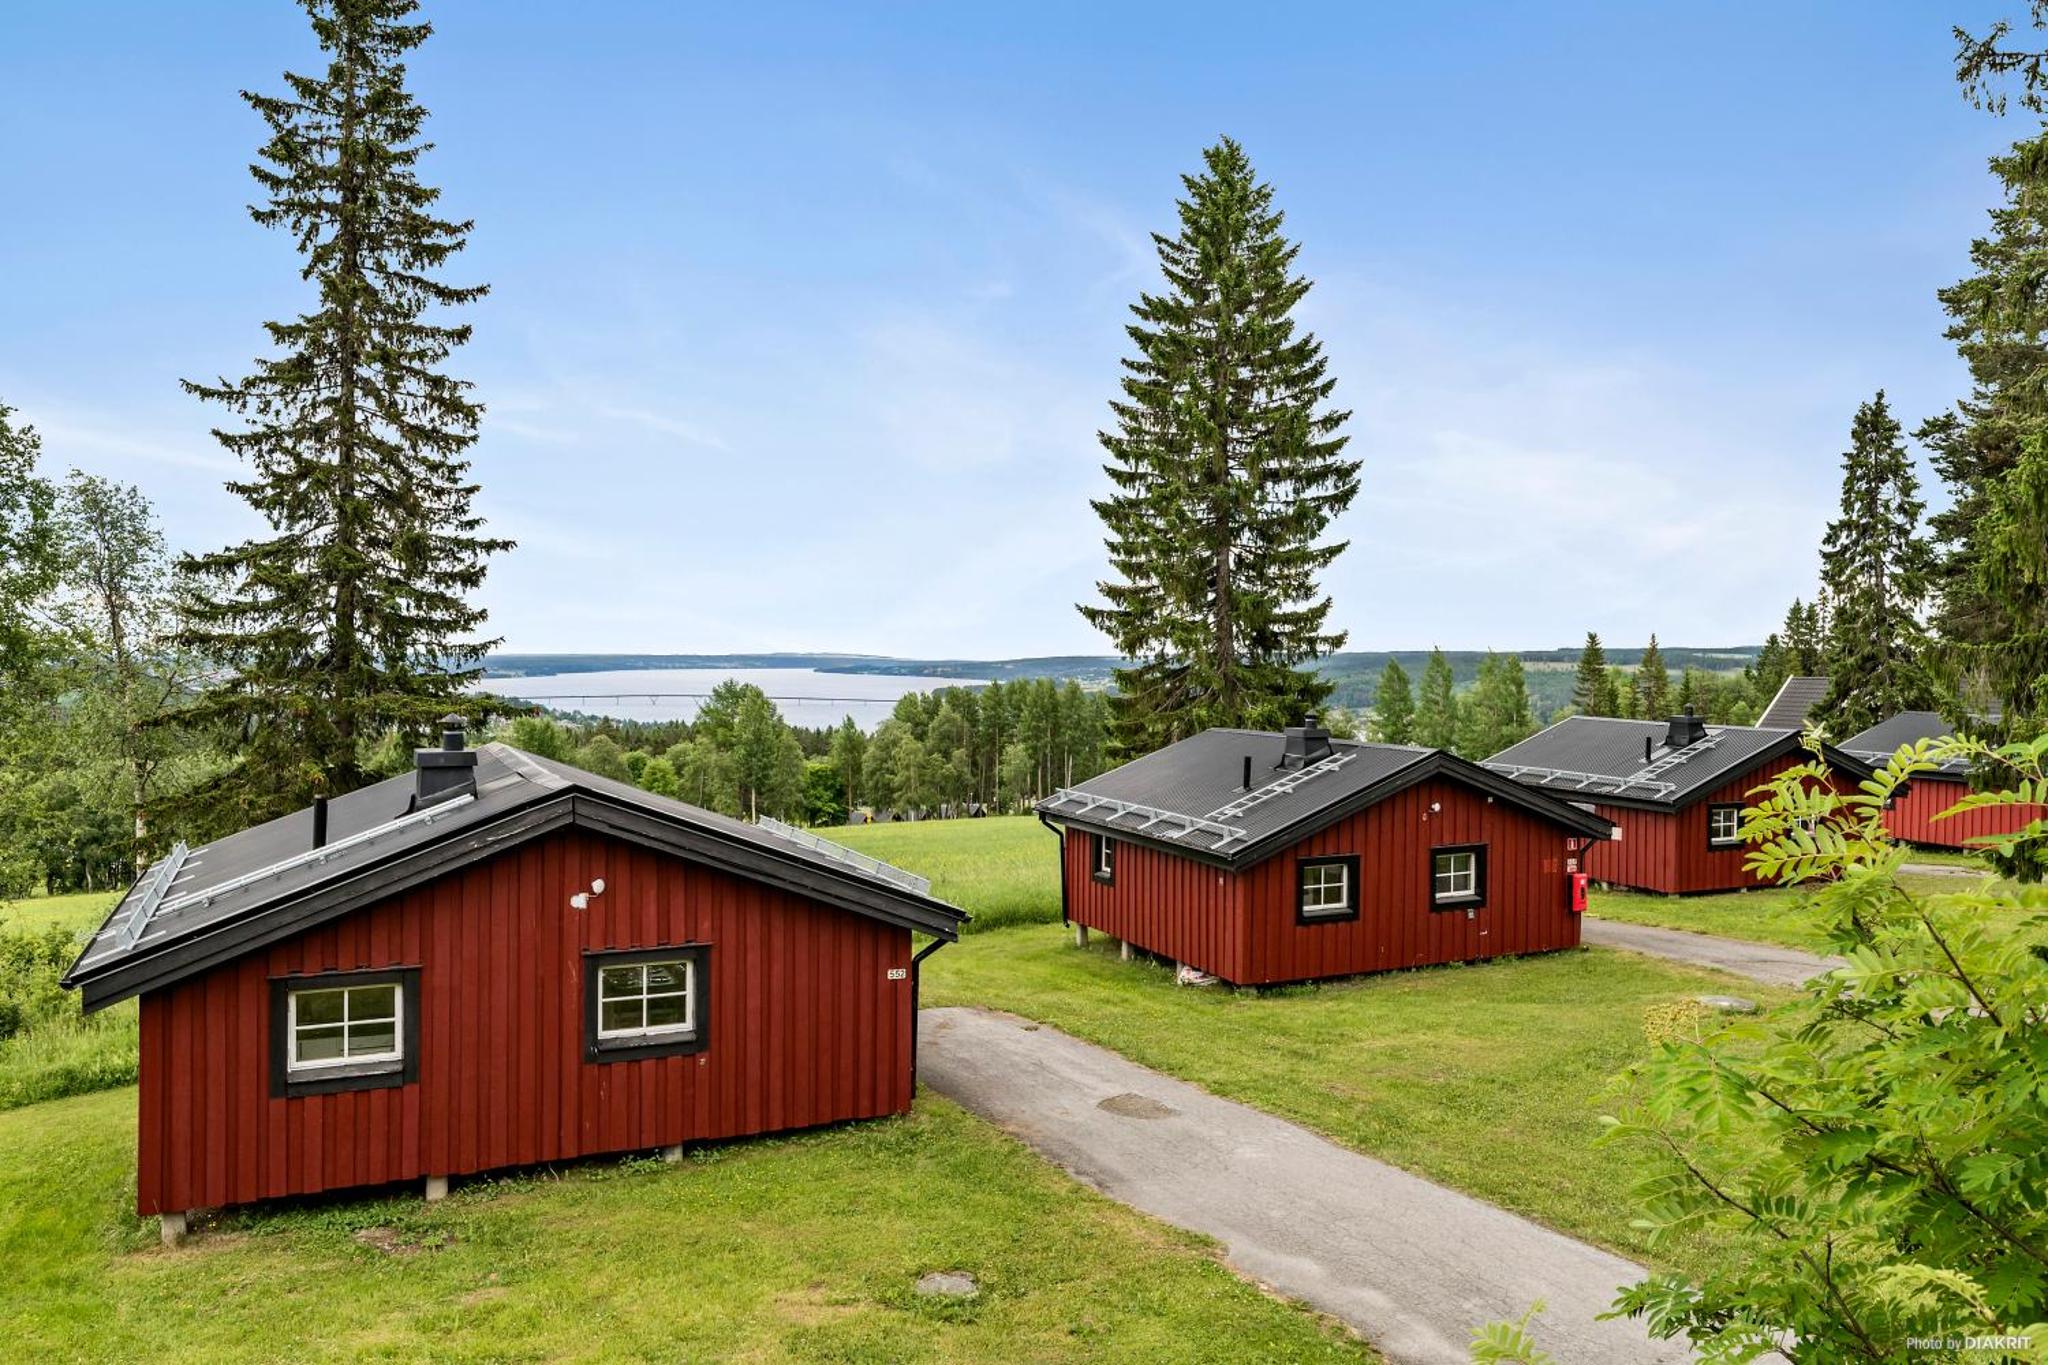 First Camp Frösön – Östersund